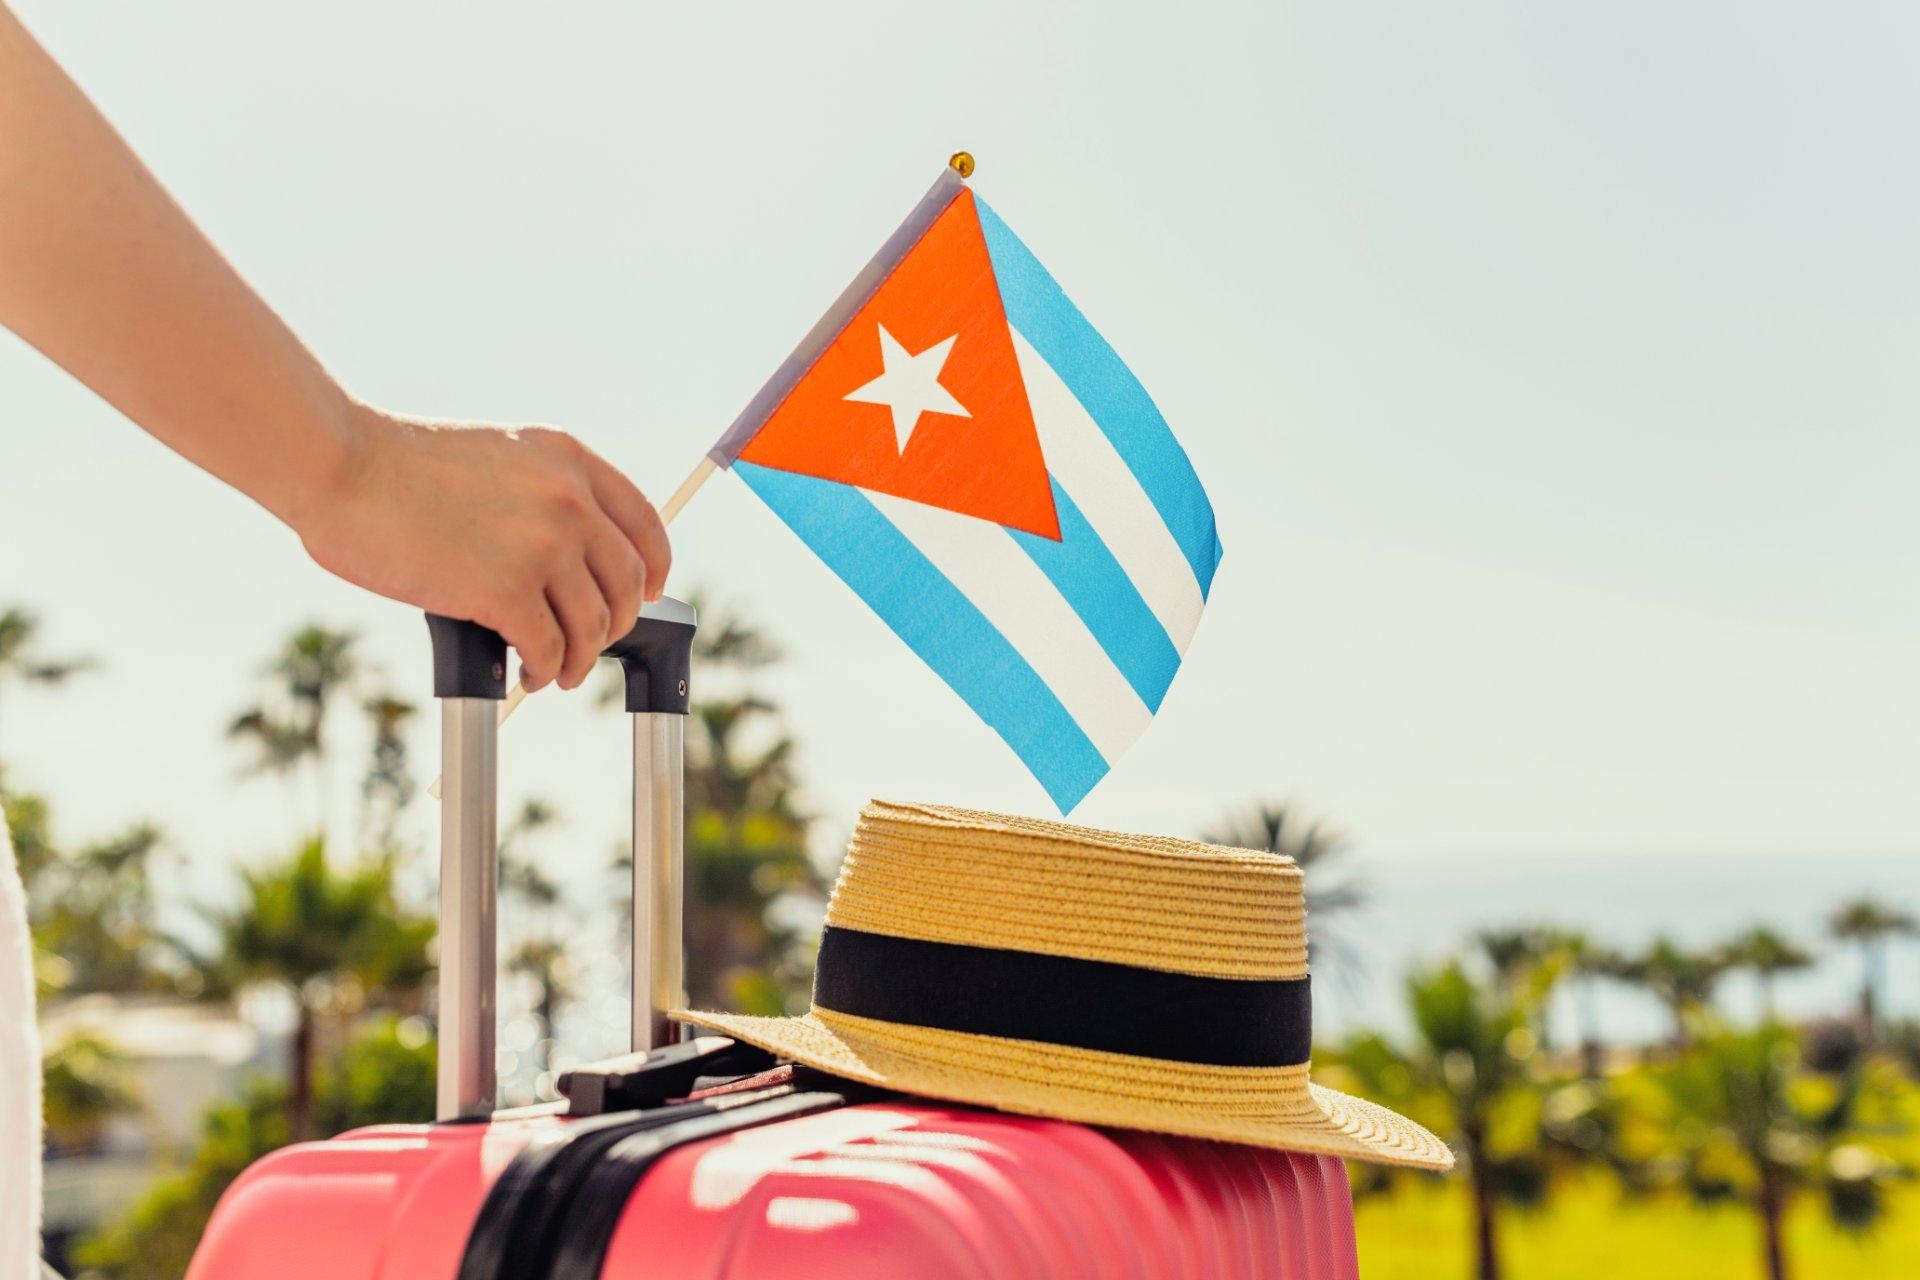 Mujer con maleta rosa, sombrero y bandera cubana saliendo del avión frente a la costa marítima con palmeras. 